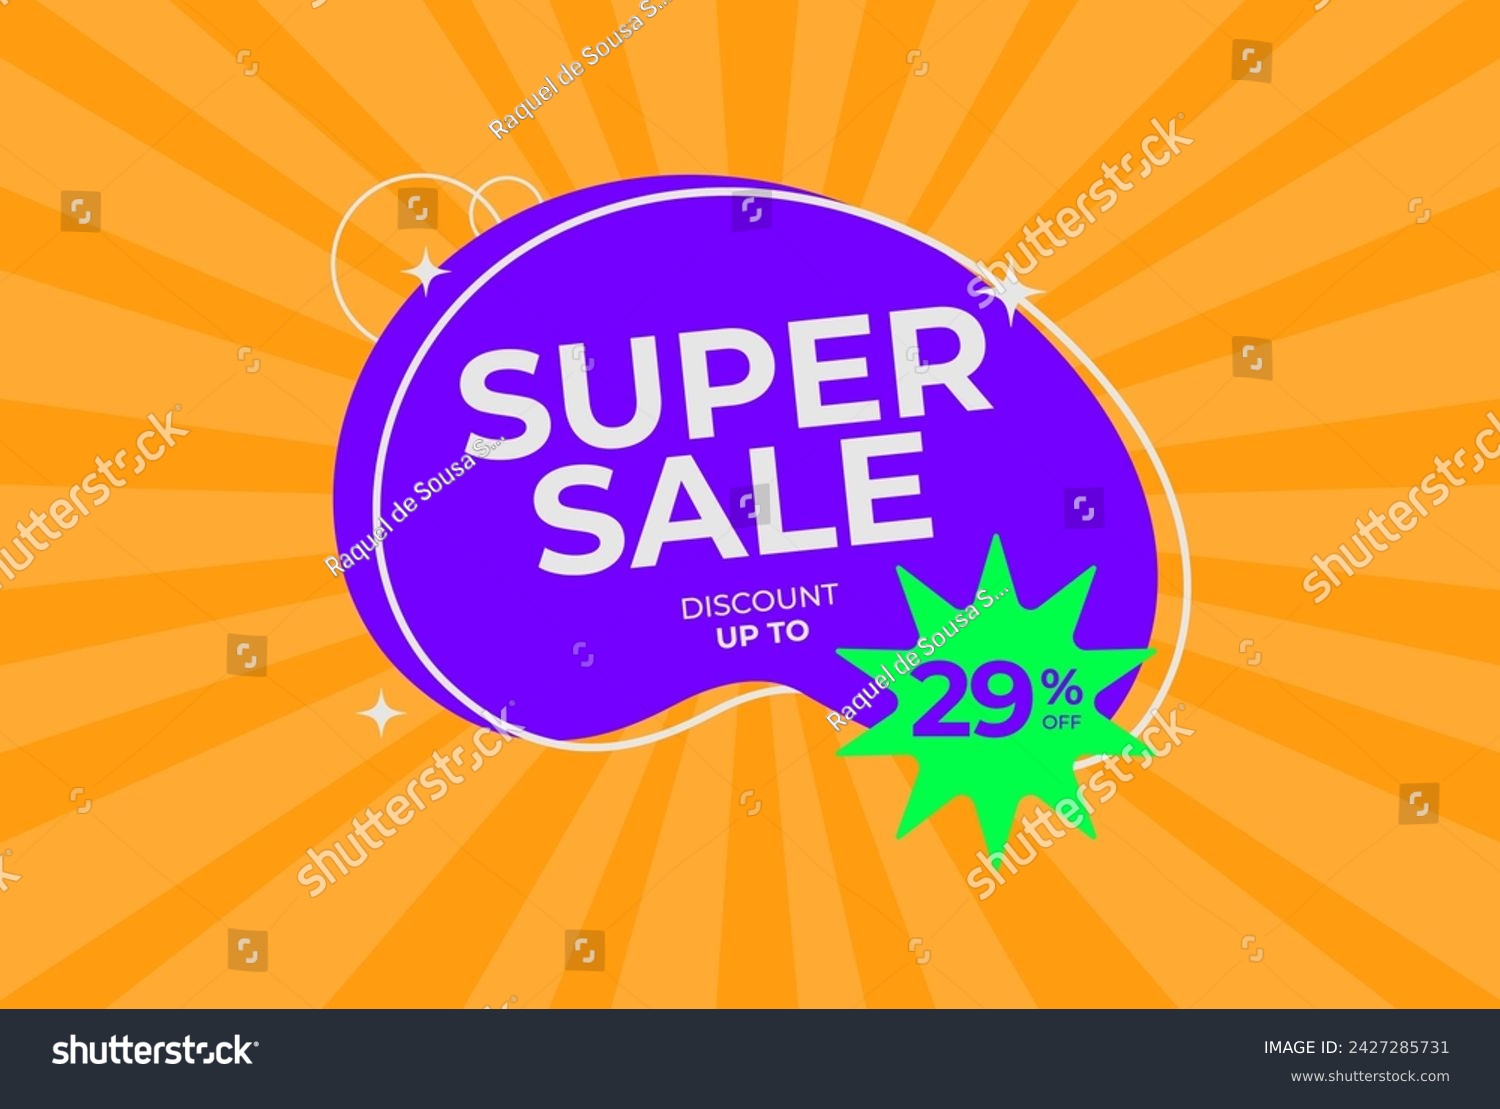 SVG of Discount up to 29% off Super sale. Twenty nine percent off promotion. Super sale business banner on rays orange background. Eps 10 vector illustration. svg